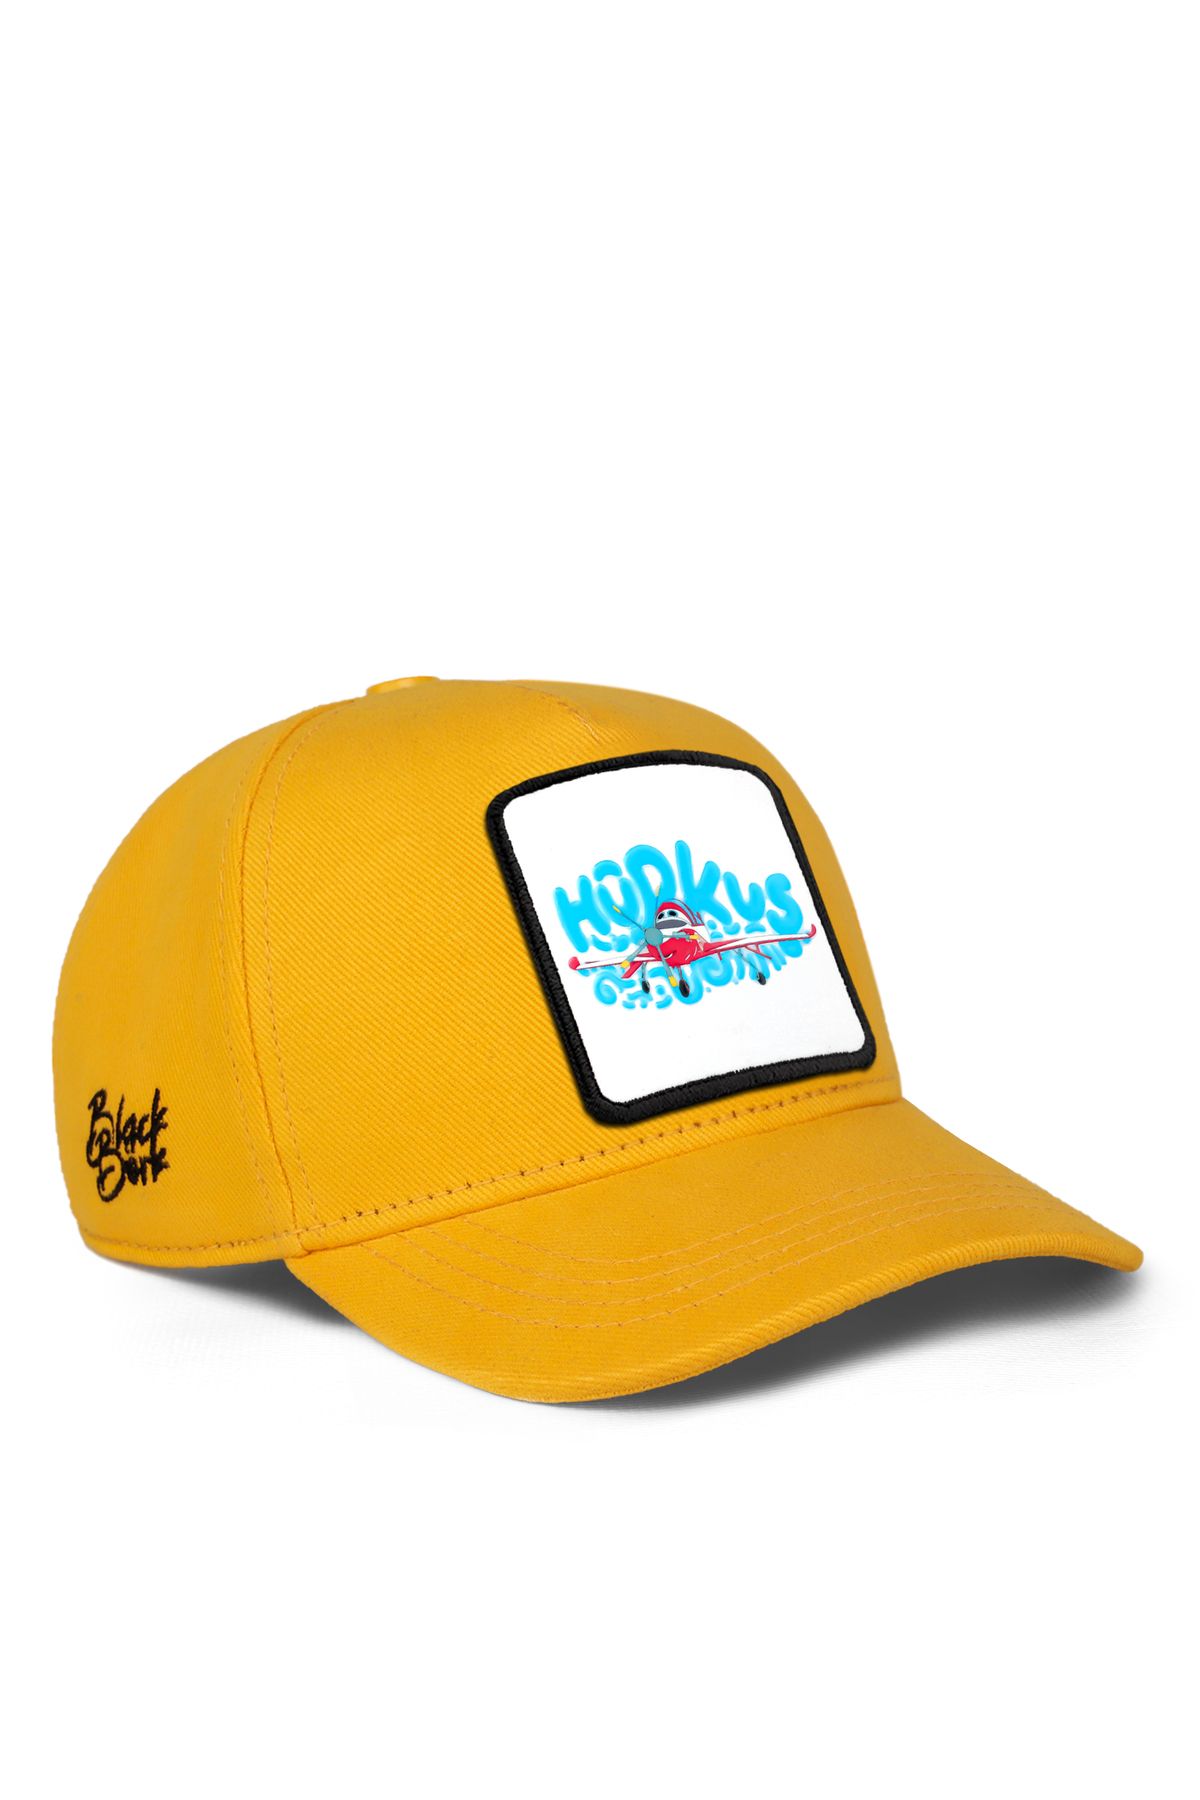 BlackBörk V1 Baseball Bulutların Arasında Hürkuş Lisanlı Sarı Çocuk Şapka